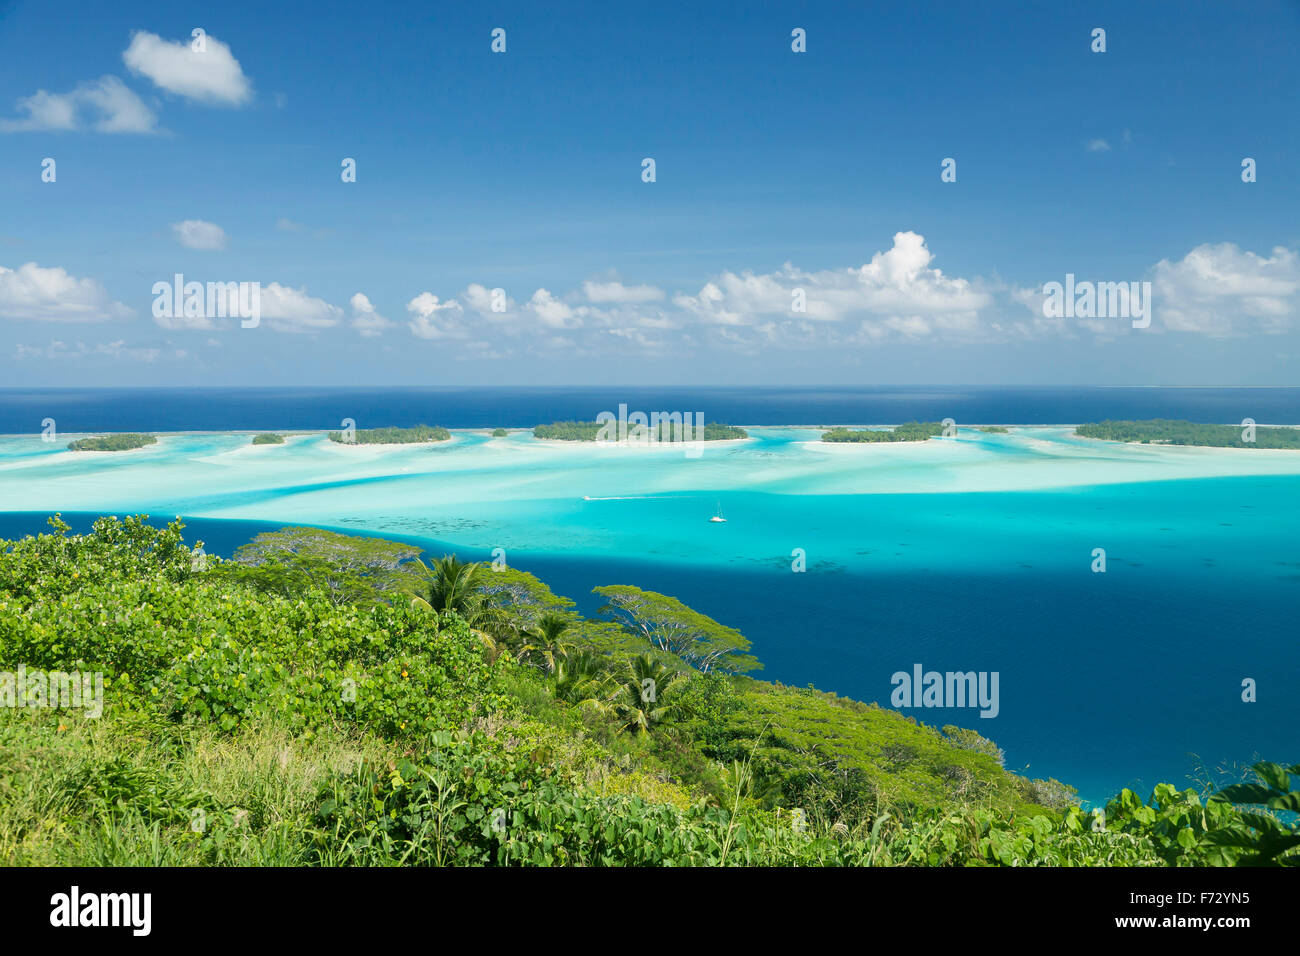 Lagoon at Bora Bora, French Polynesia Stock Photo